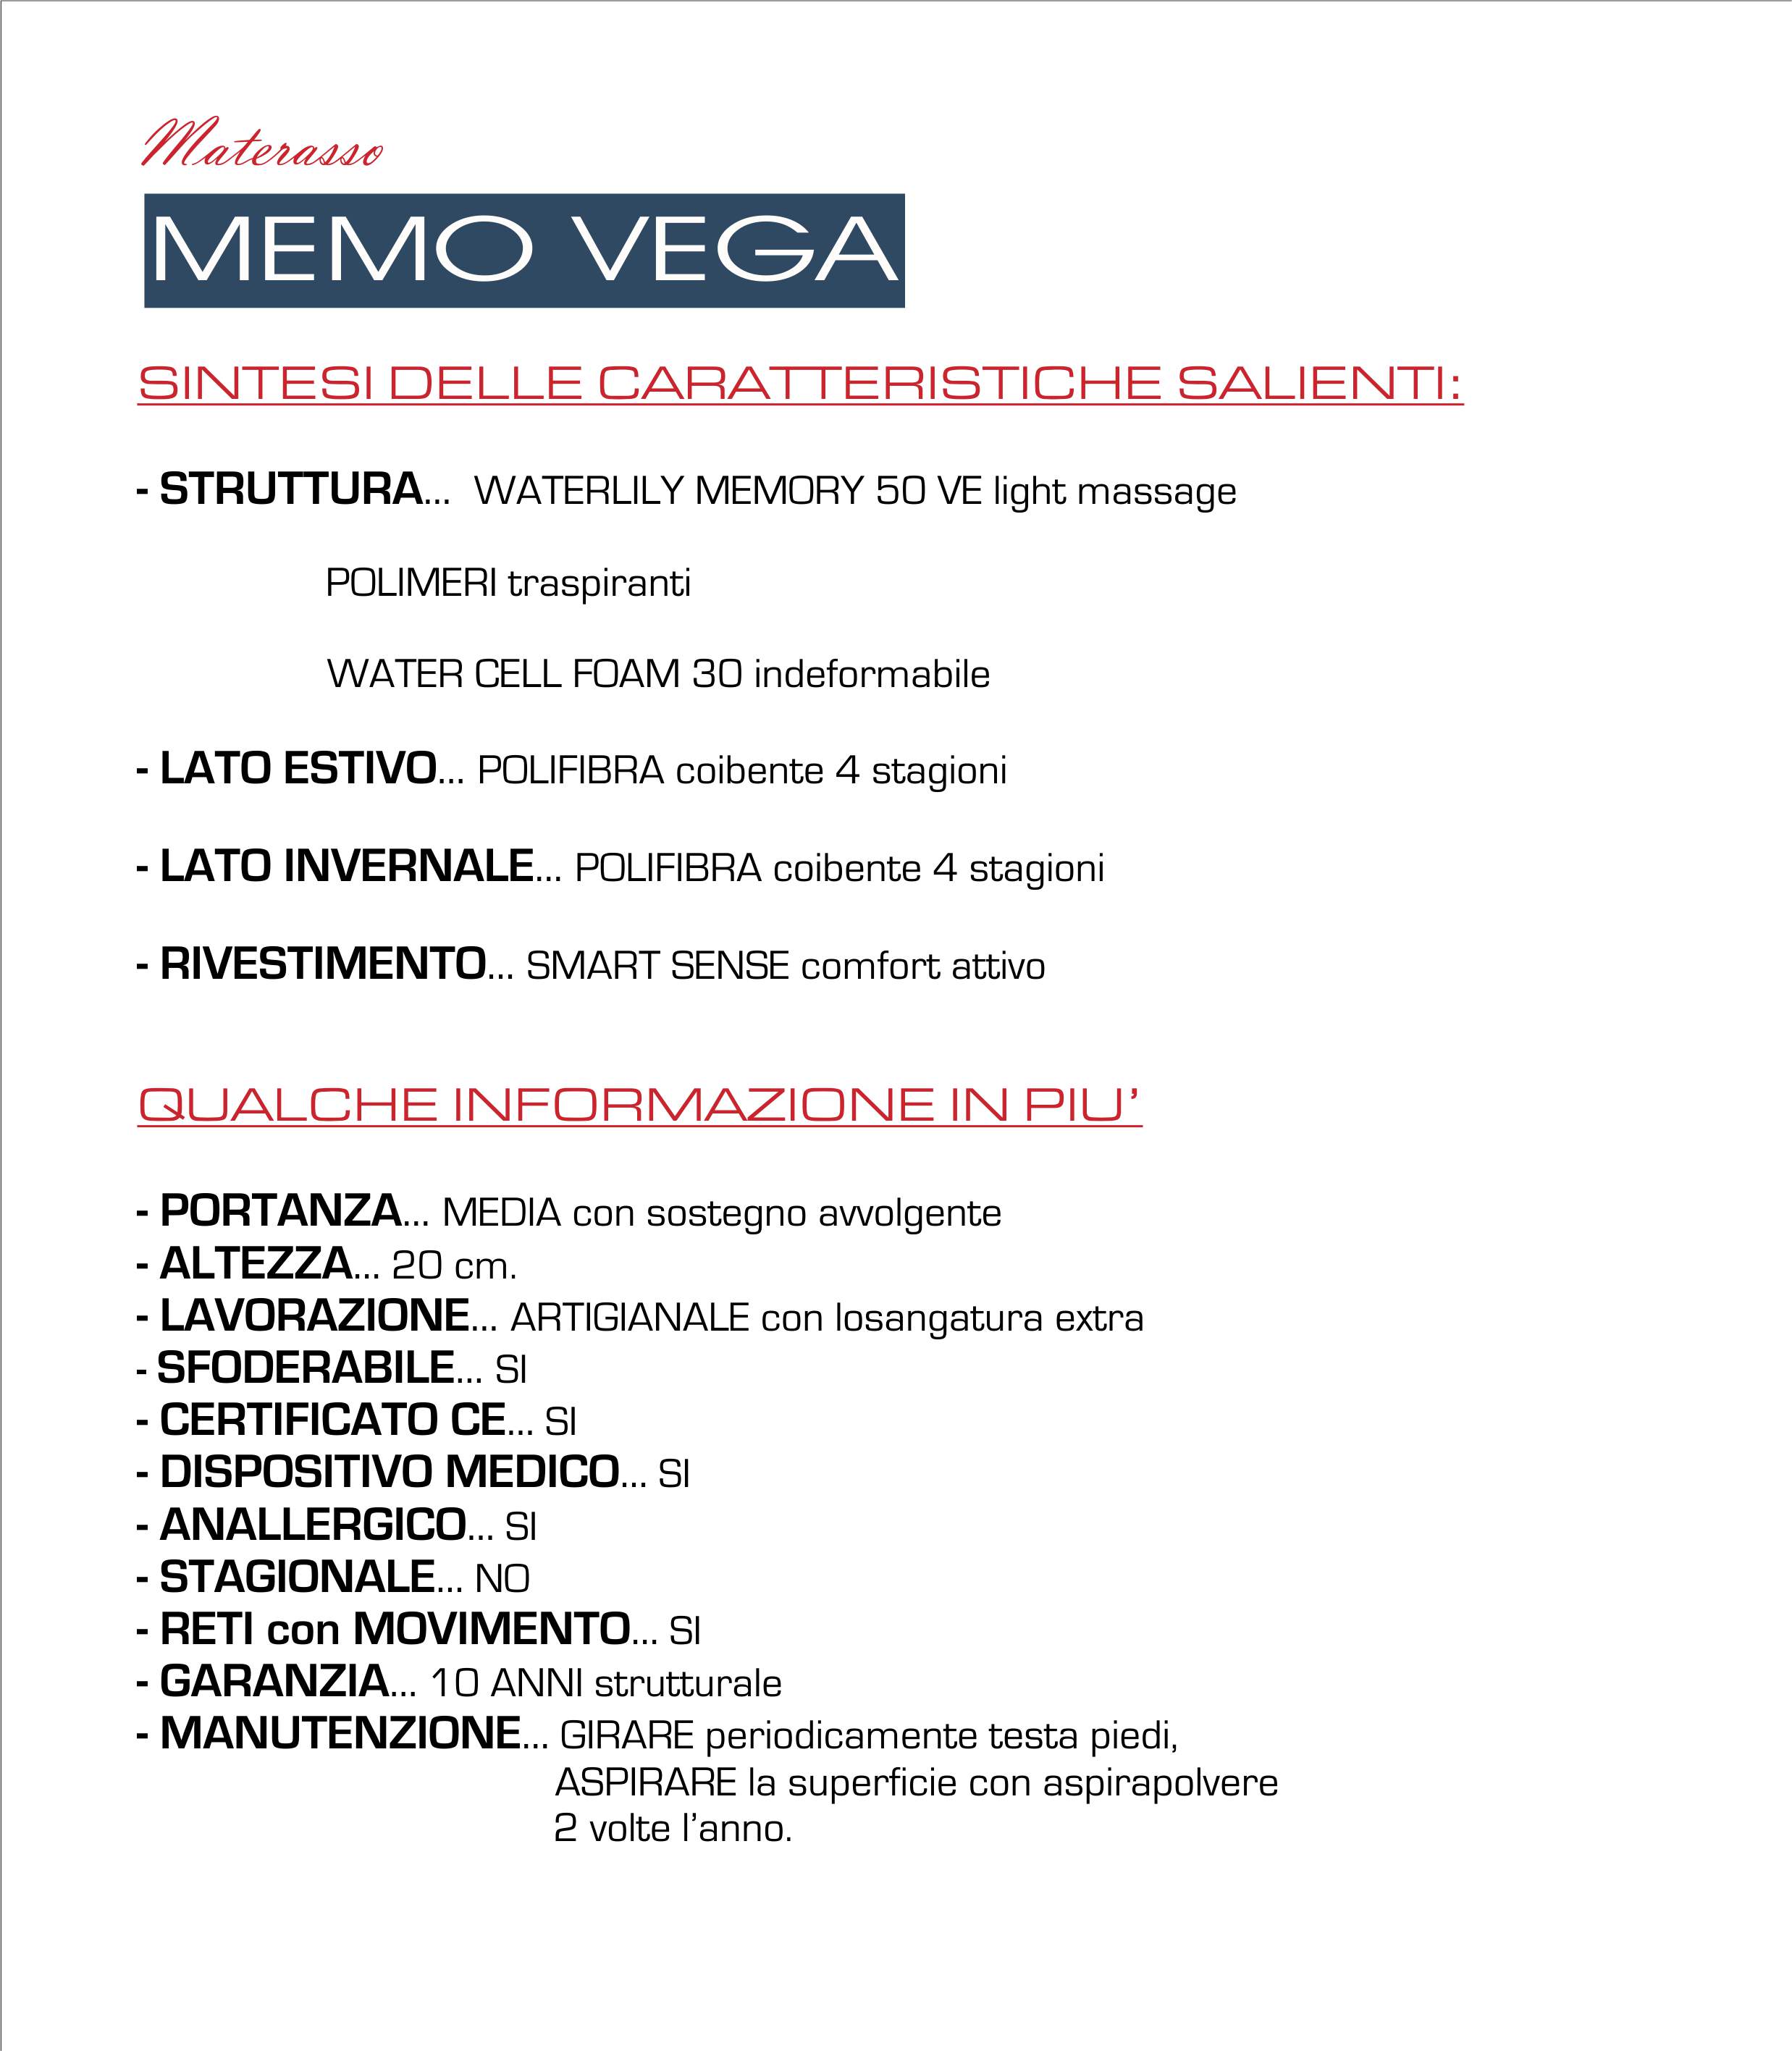 Memo Vega